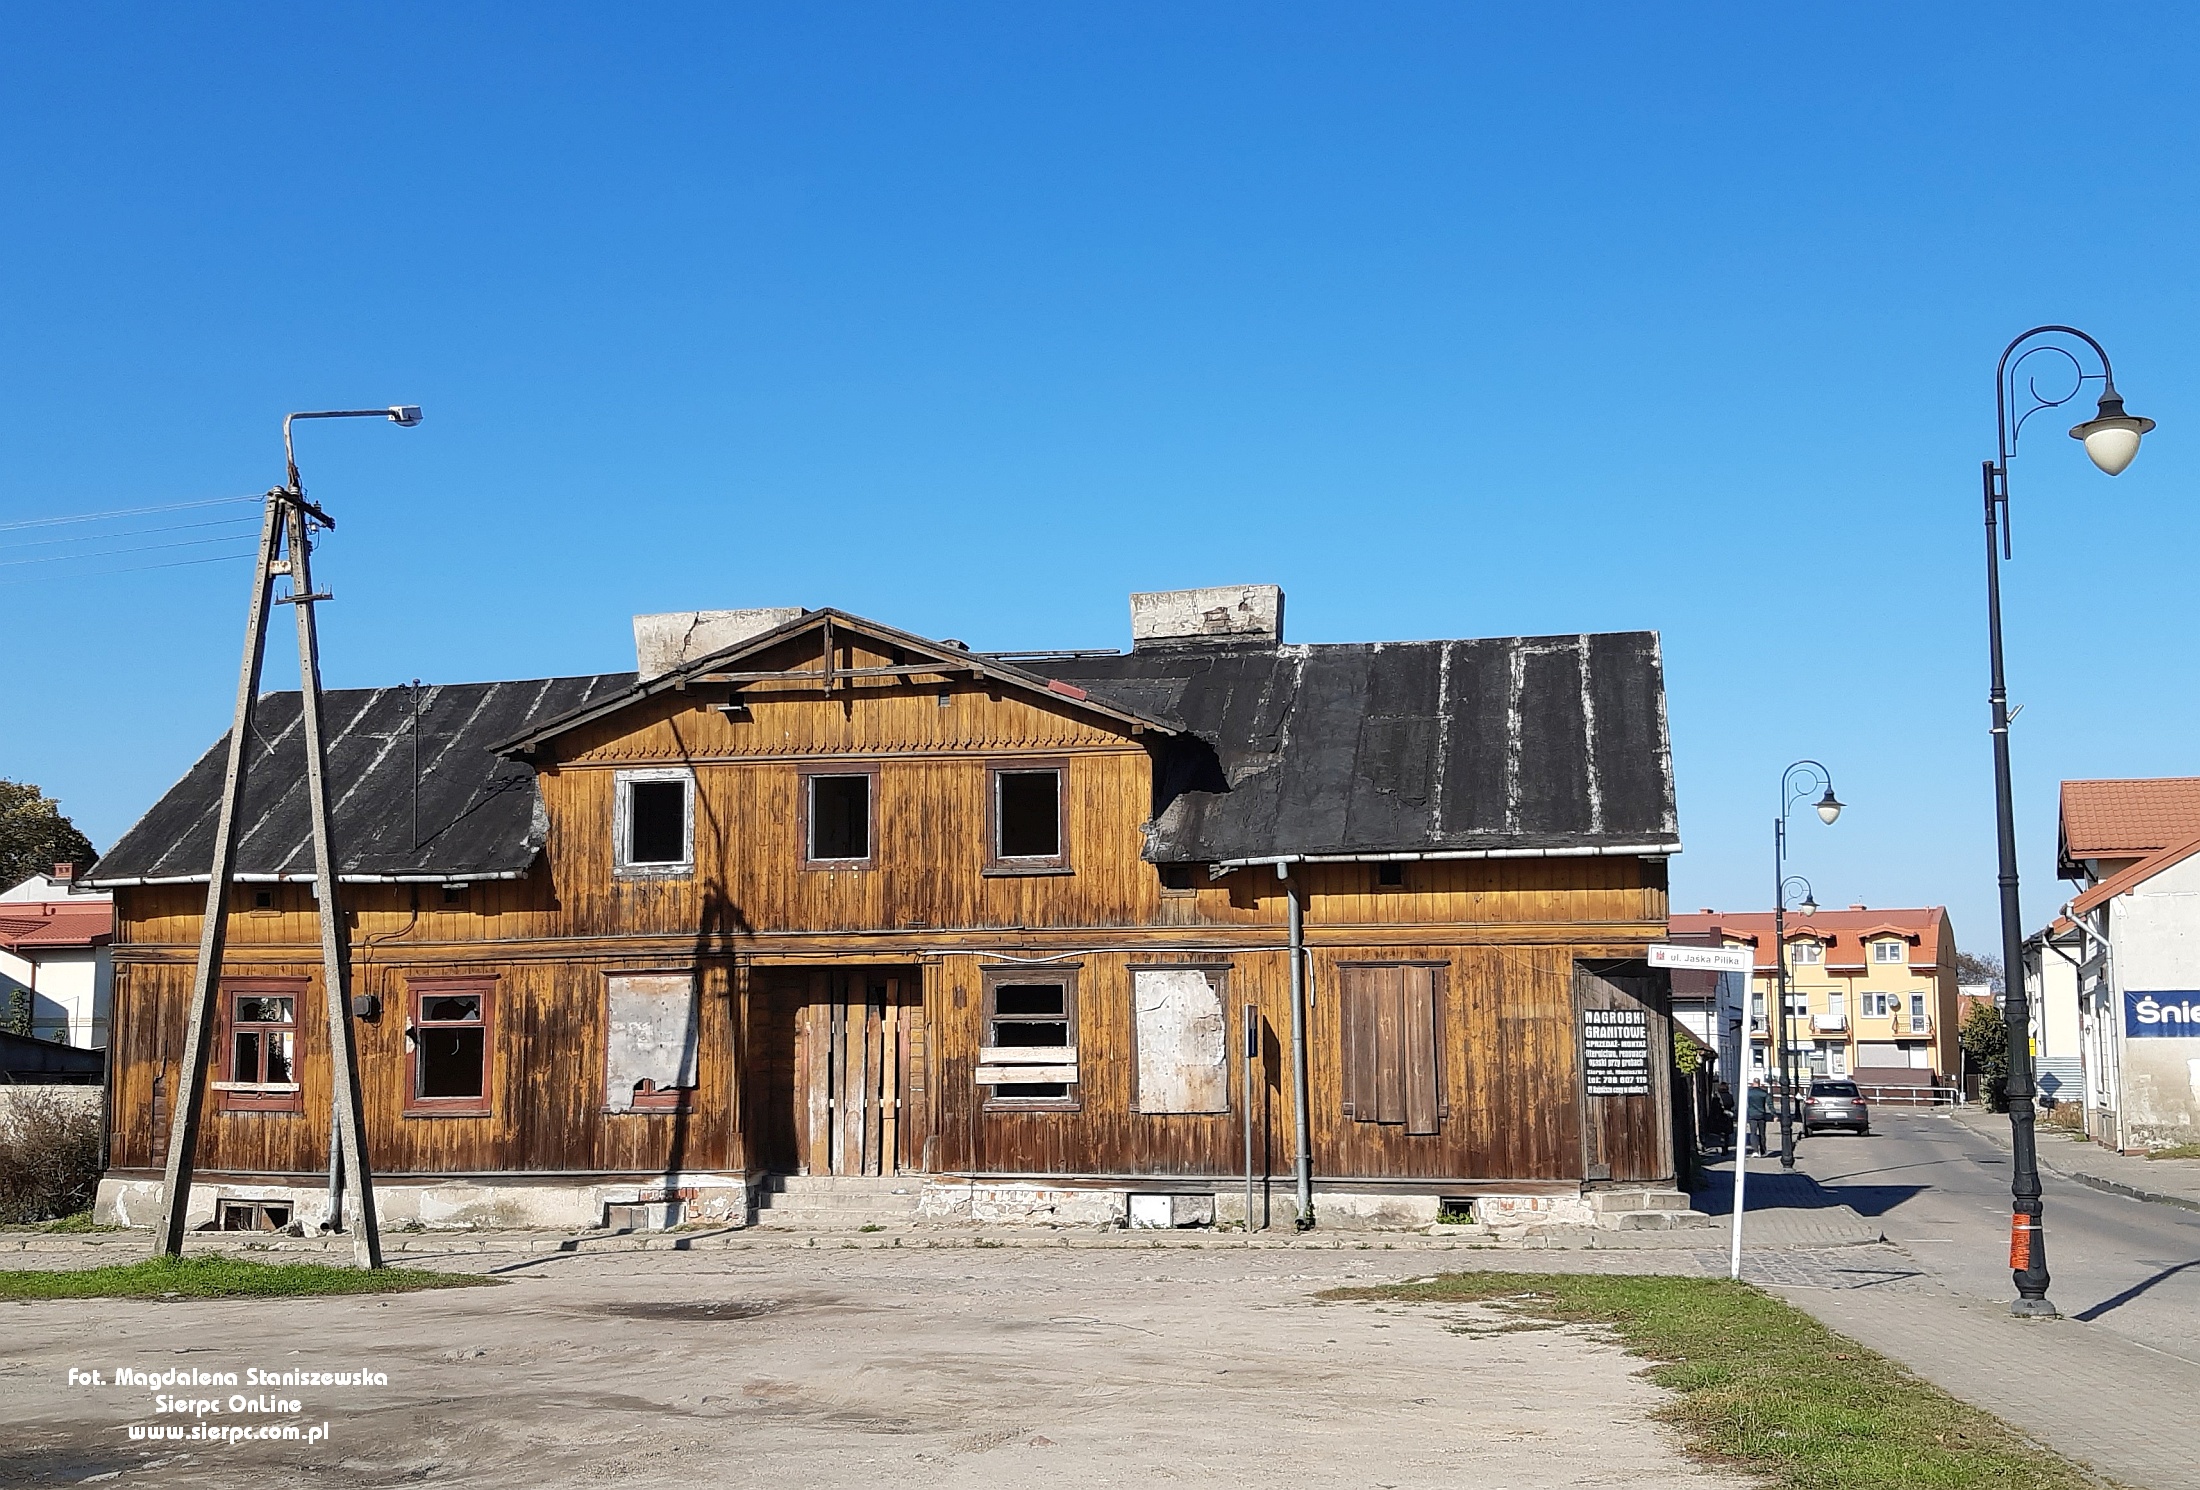 Dom z historią, który niedługo odejdzie w niebyt, ulica Jaśka Pilika, październik 2021 r.